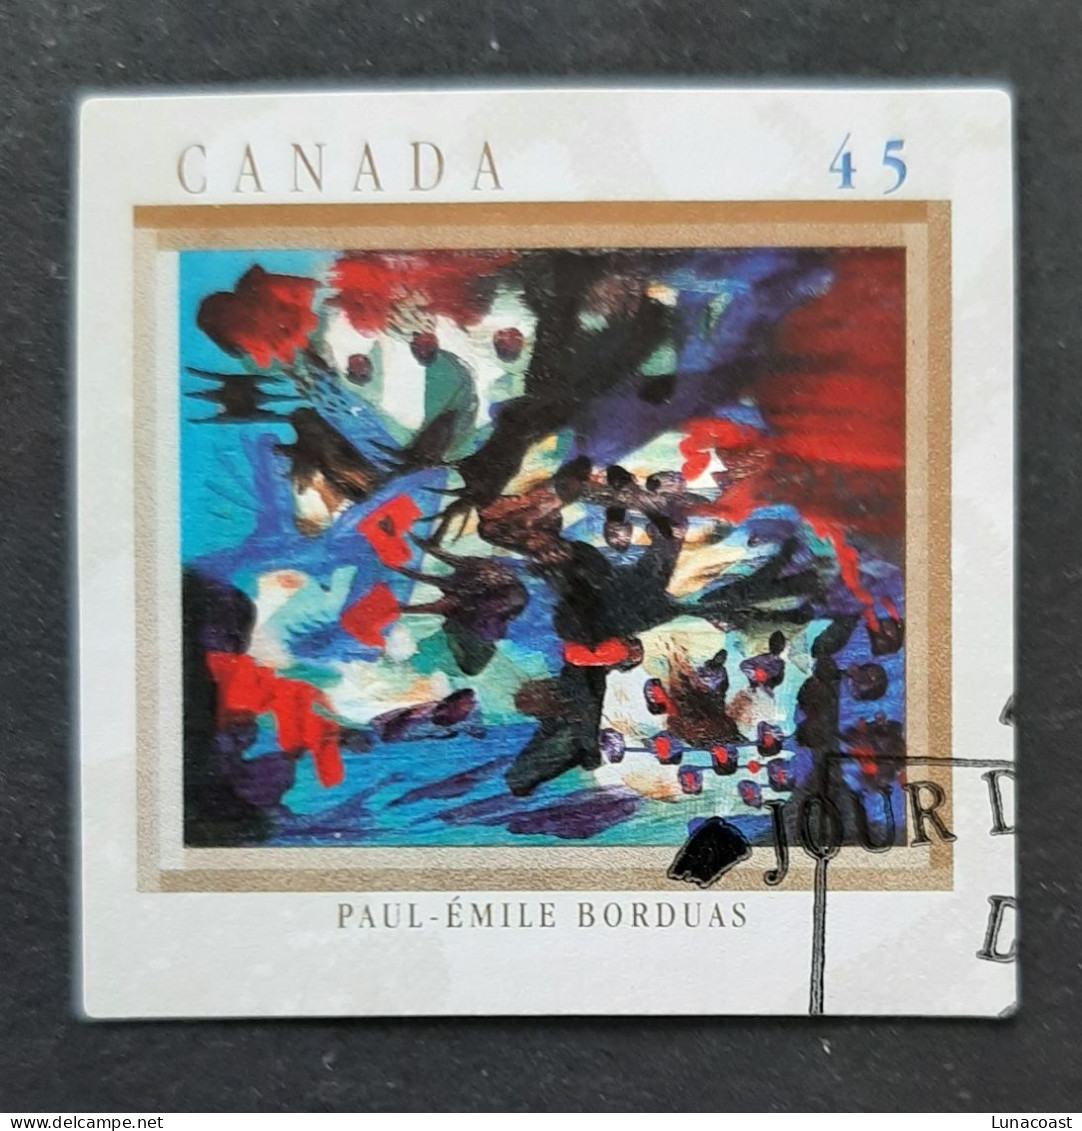 Canada 1998  USED Sc 1747    45c  The Automatistes, Paul-Emile Borduas - Oblitérés